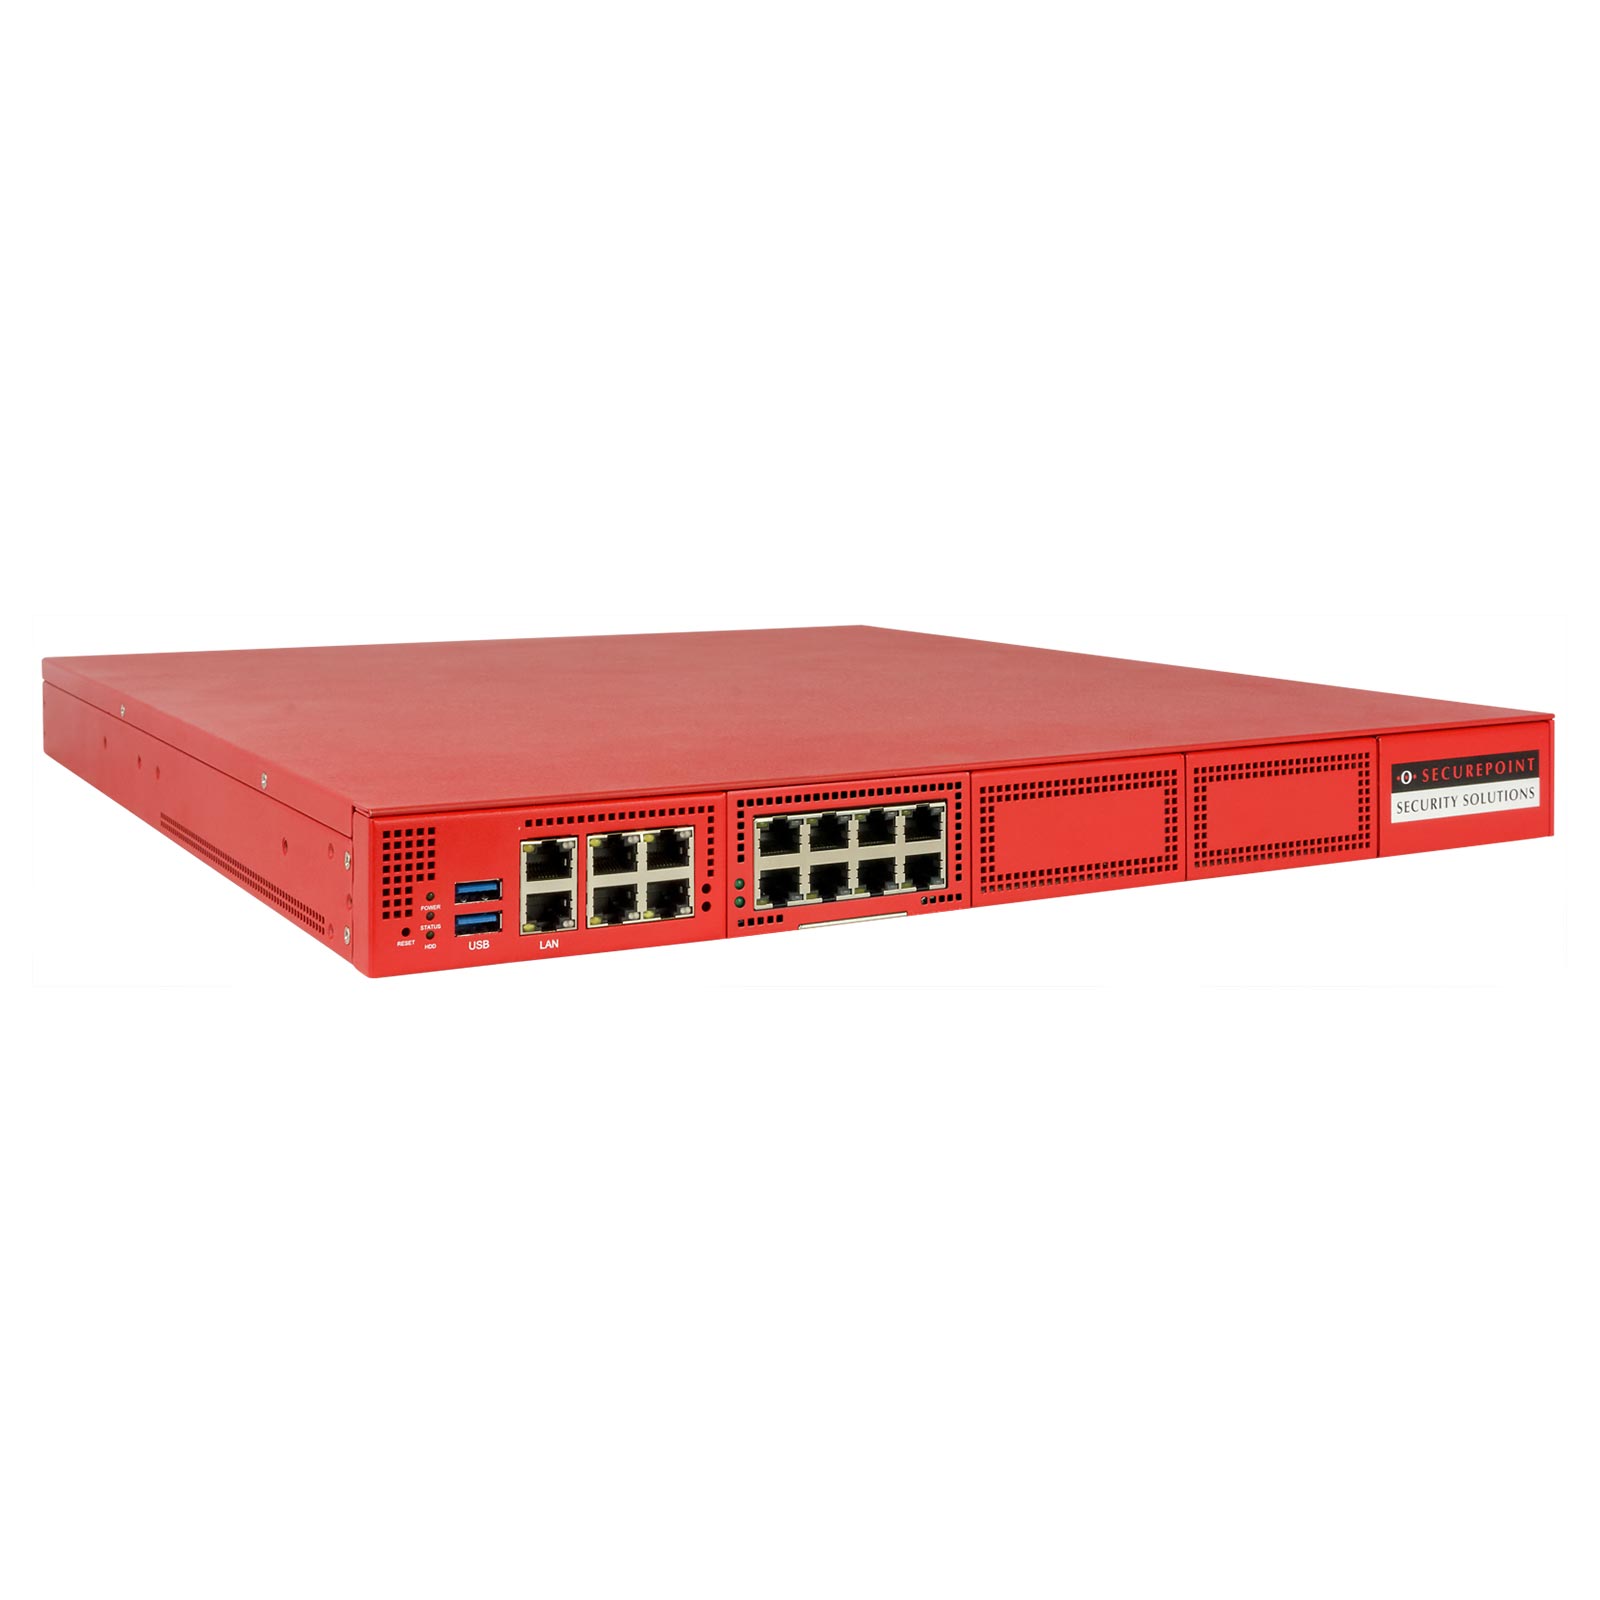 Securepoint RC400 G3 Firewall (SP-UTM-11460) | Günstig kaufen mit Beratung  und Support